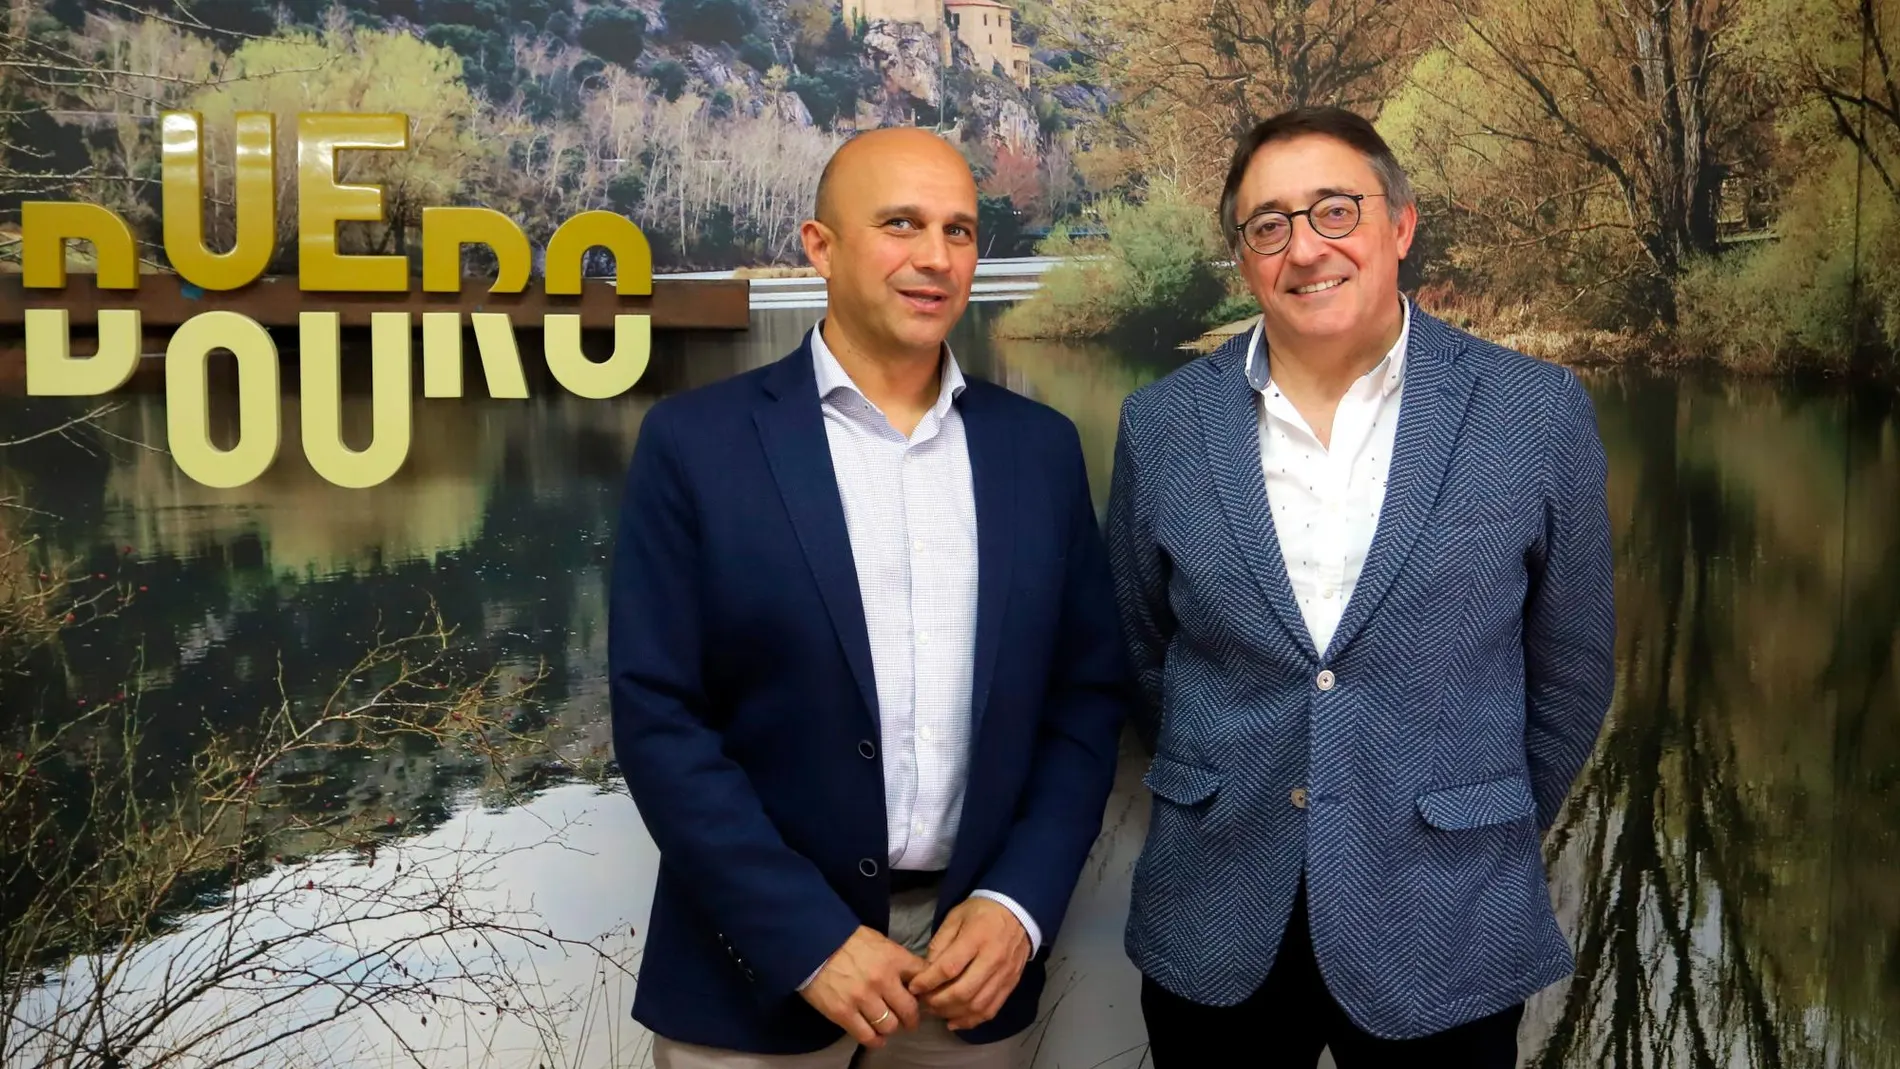 El presidente del clúster de Habitat Eficiente (Aeice), Ricardo Fortuoso, y su director general, Enrique Cobreros, presentan el nuevo Plan estratégico elaborado para el periodo 2019-2020